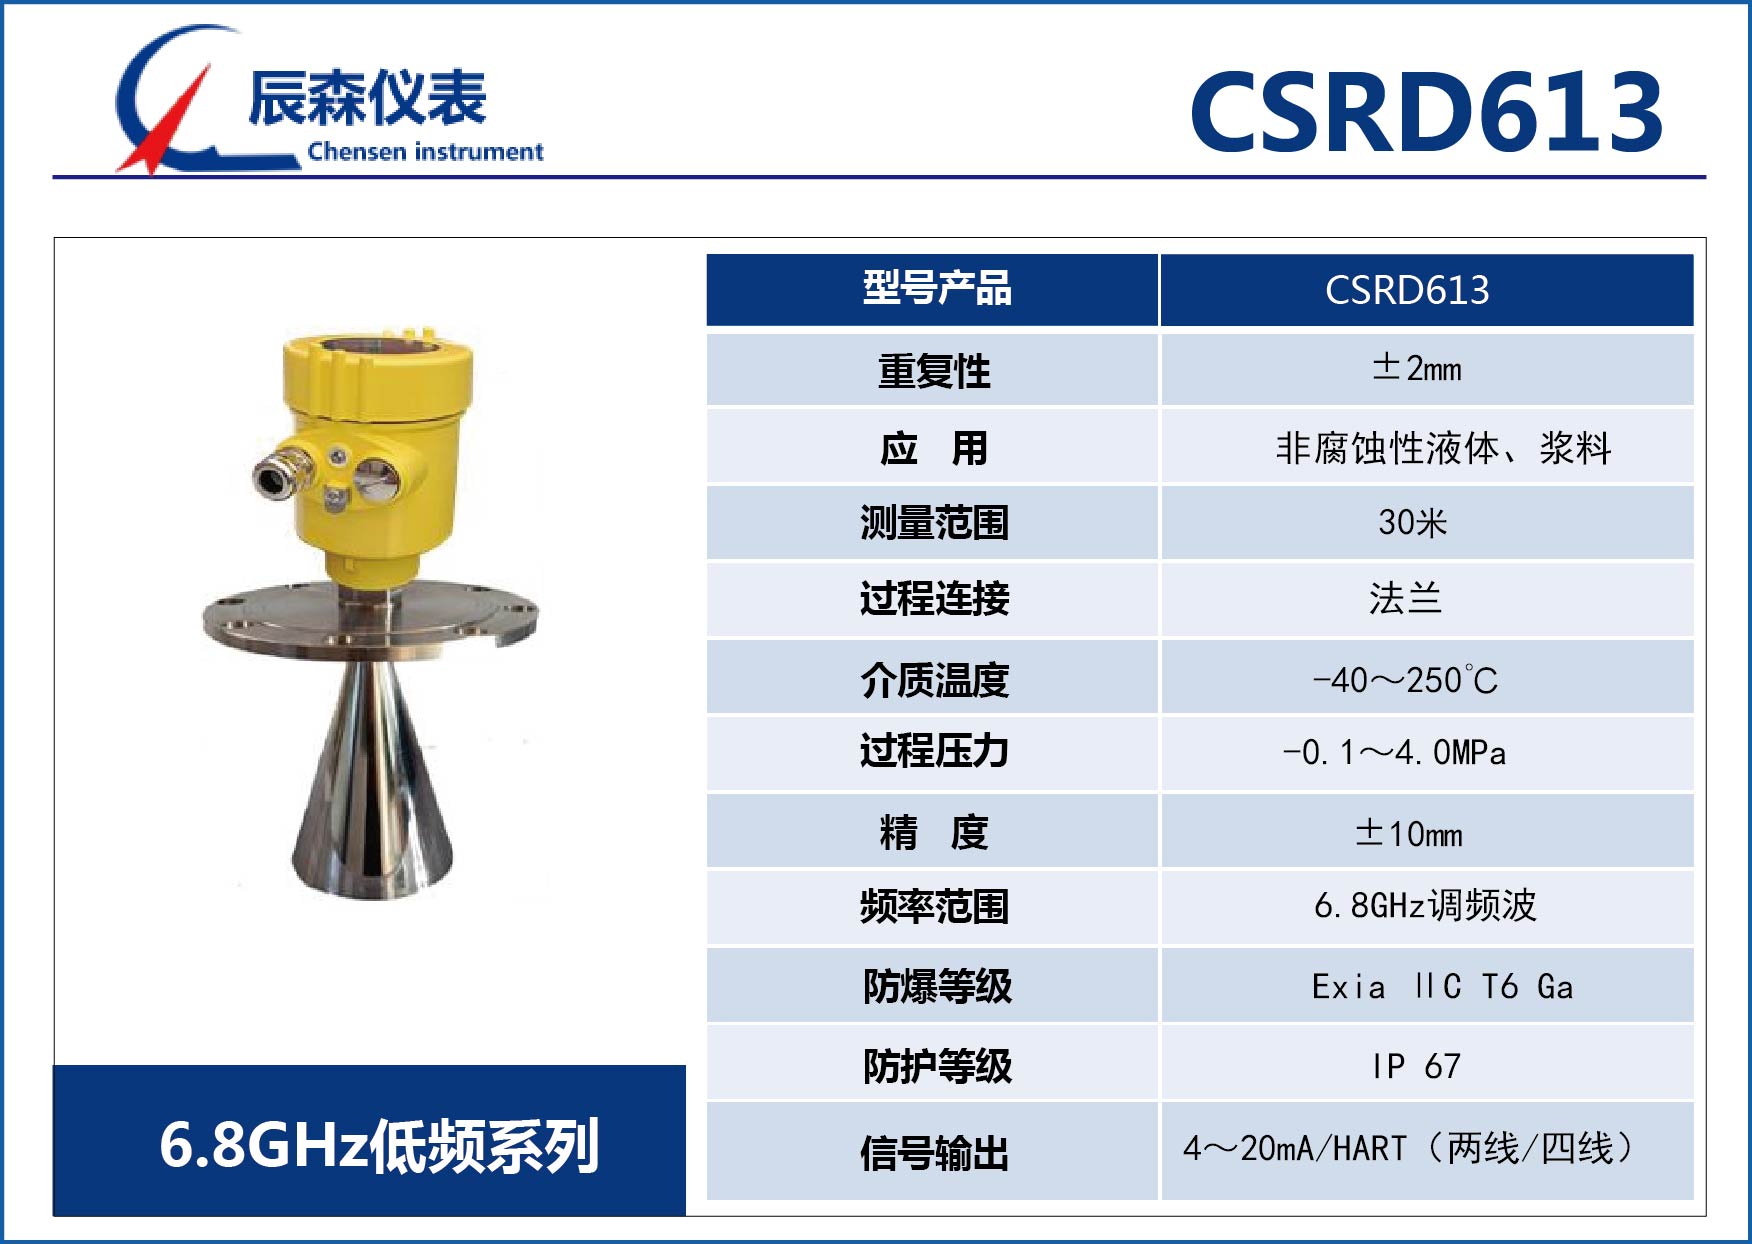 低频雷达物位计CSRD613